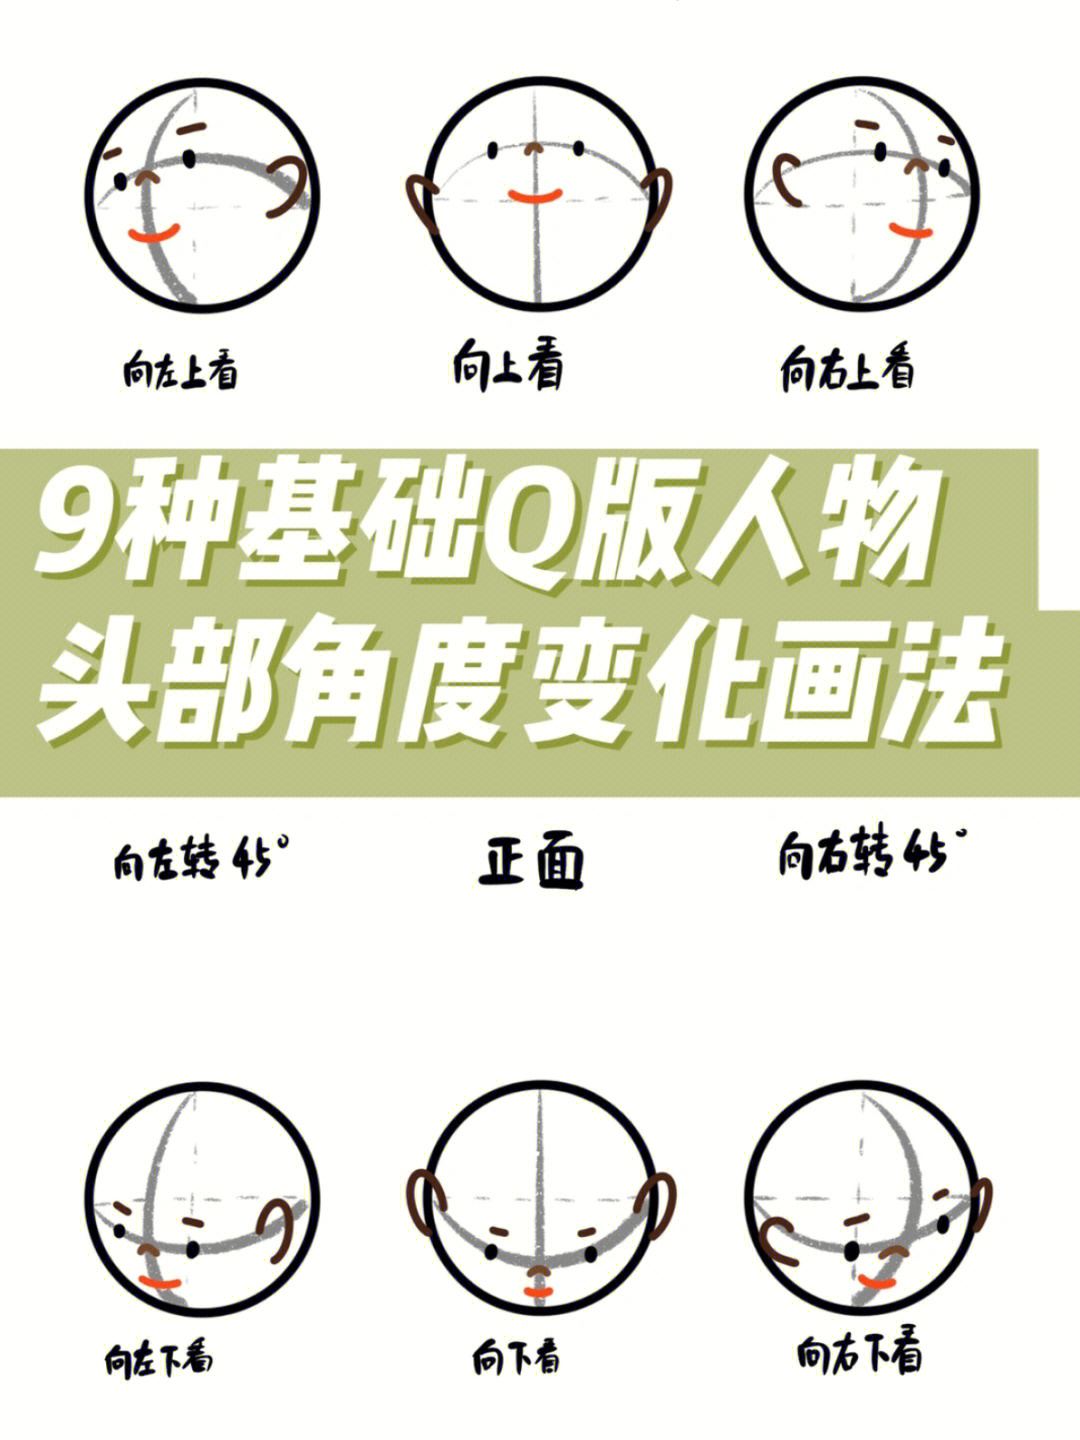 9种基础q版人物头部角度变化画法